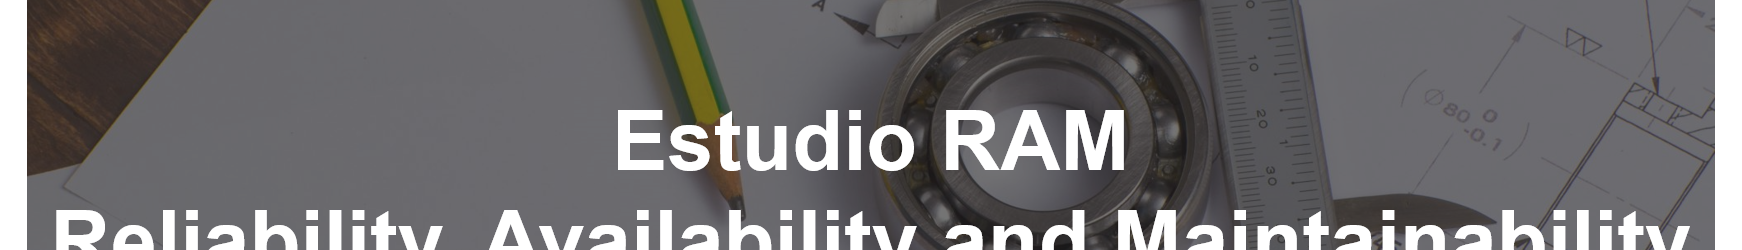 Estudio RAM: Optimización de la Disponibilidad y del Mantenimiento desde el Diseño